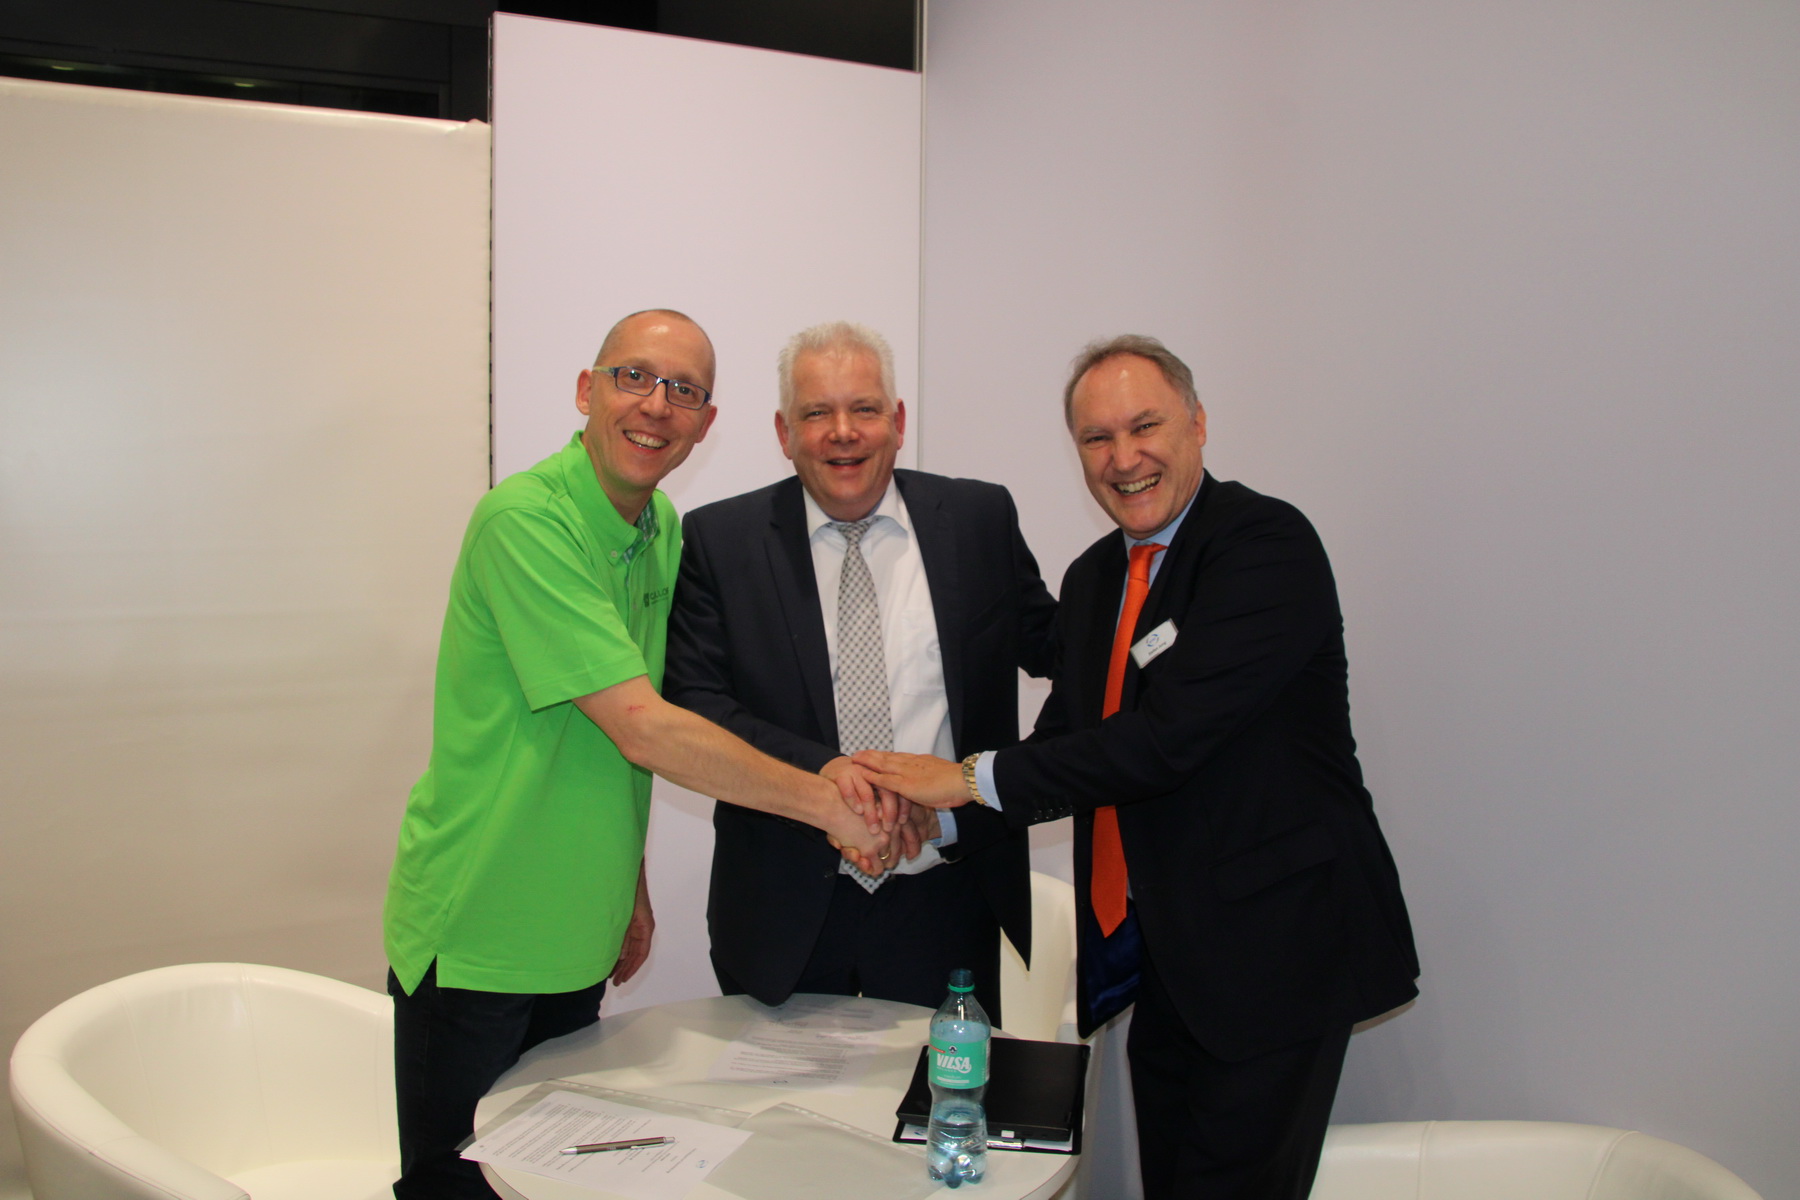 Geballte Geschäftsführer Power bei Jutec. Herr Schülzky nach der Unterschrift mit Herr Hein und Herrn Jung (beide Jutec). (Foto © DKB)